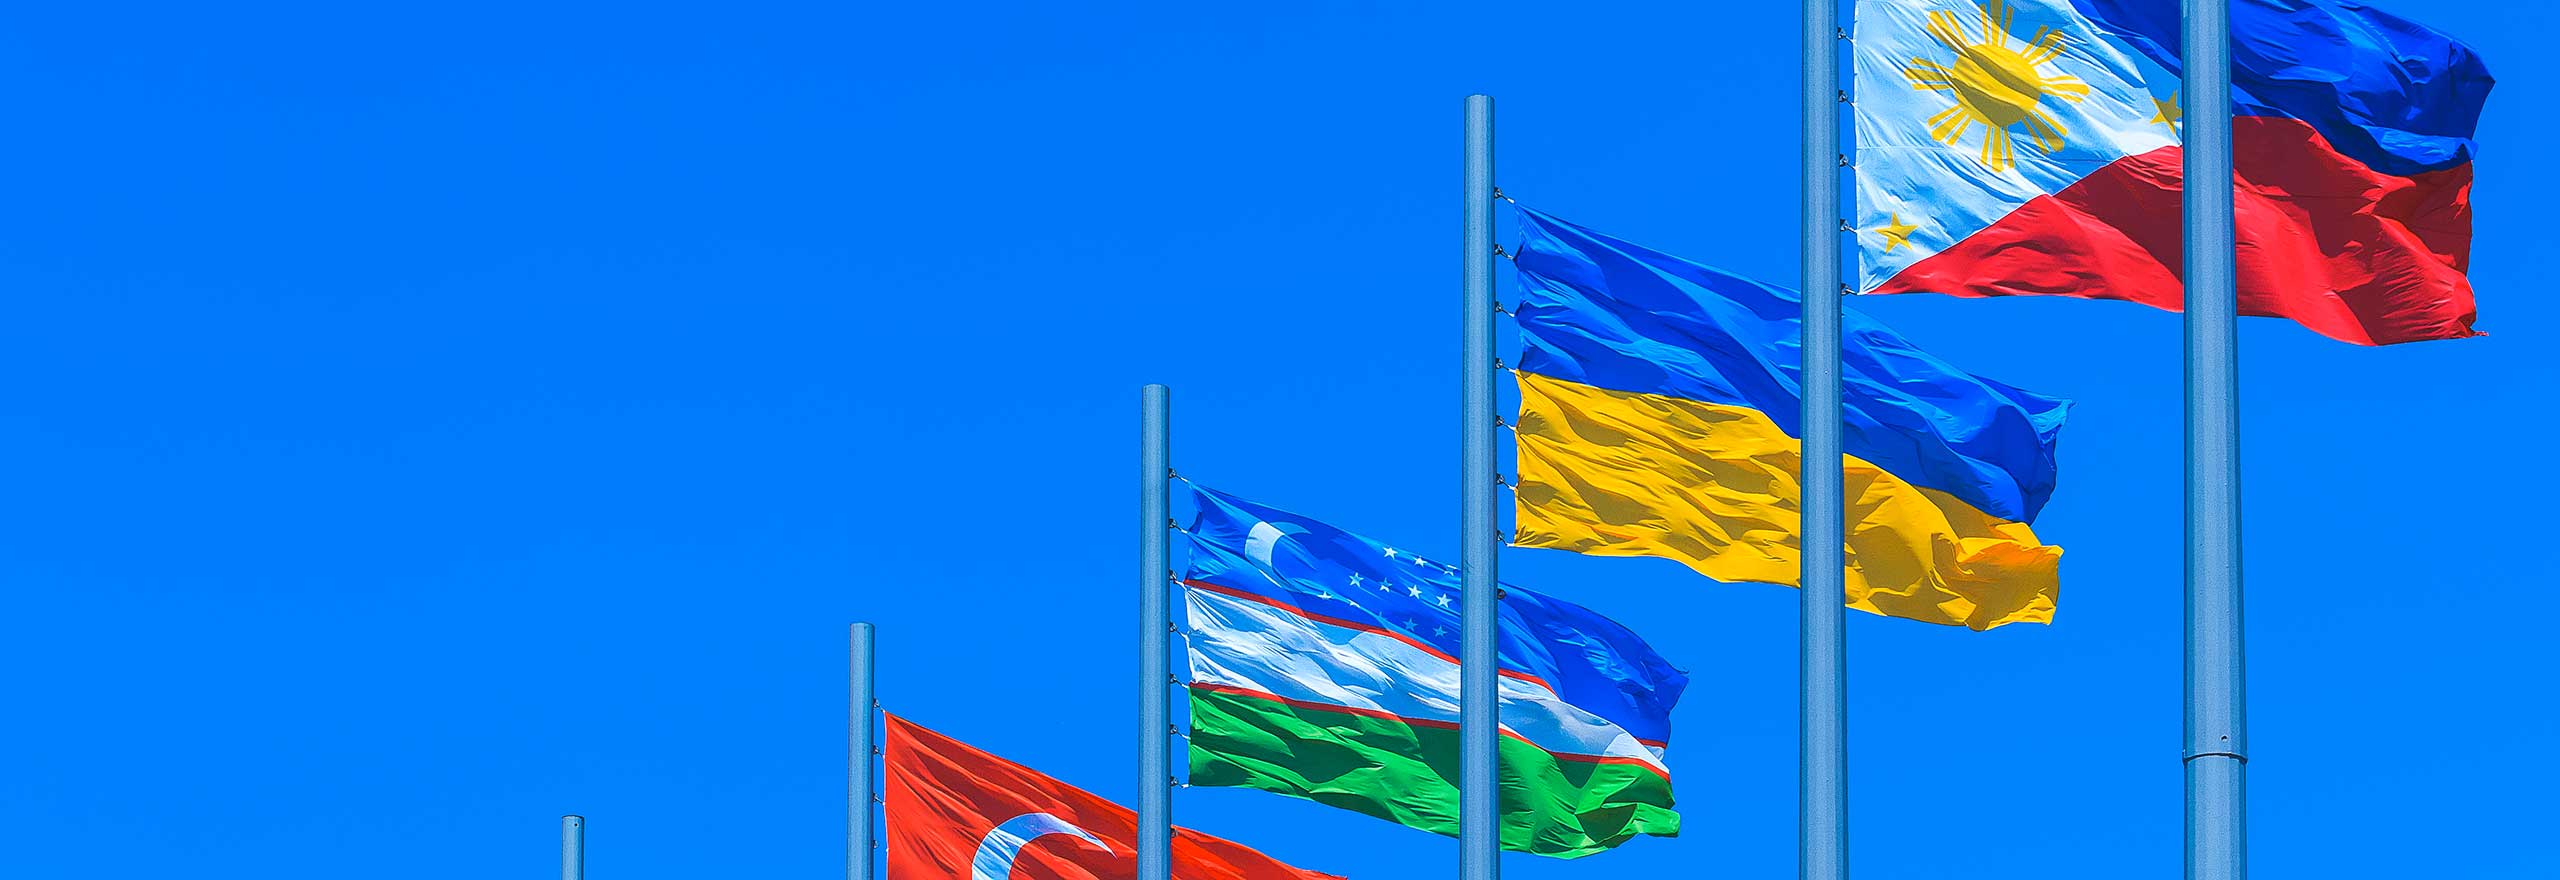 Multinationale Flaggen vor einem blauen Himmel